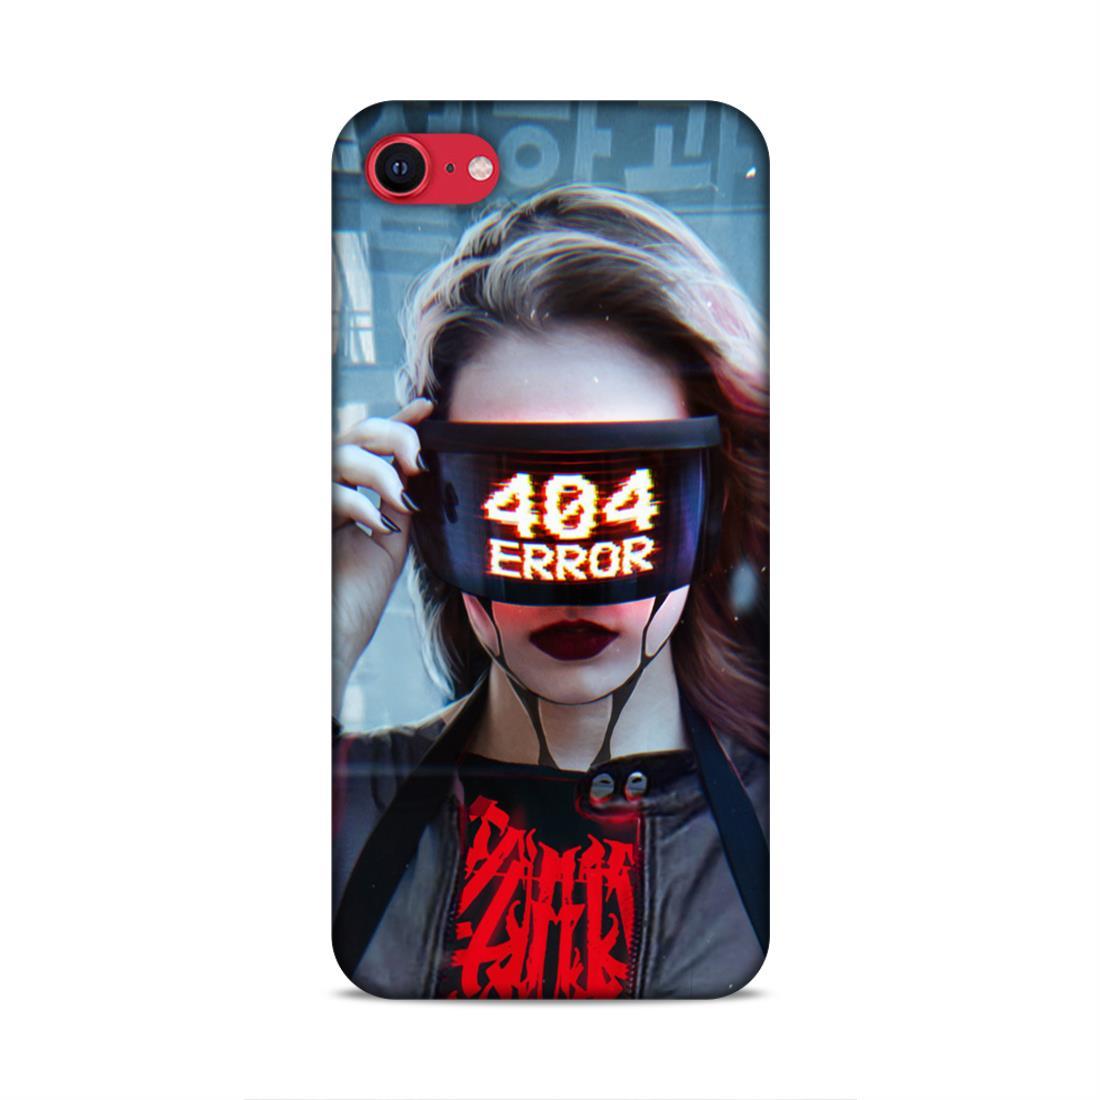 404 Error iPhone SE 2020 Phone Cover